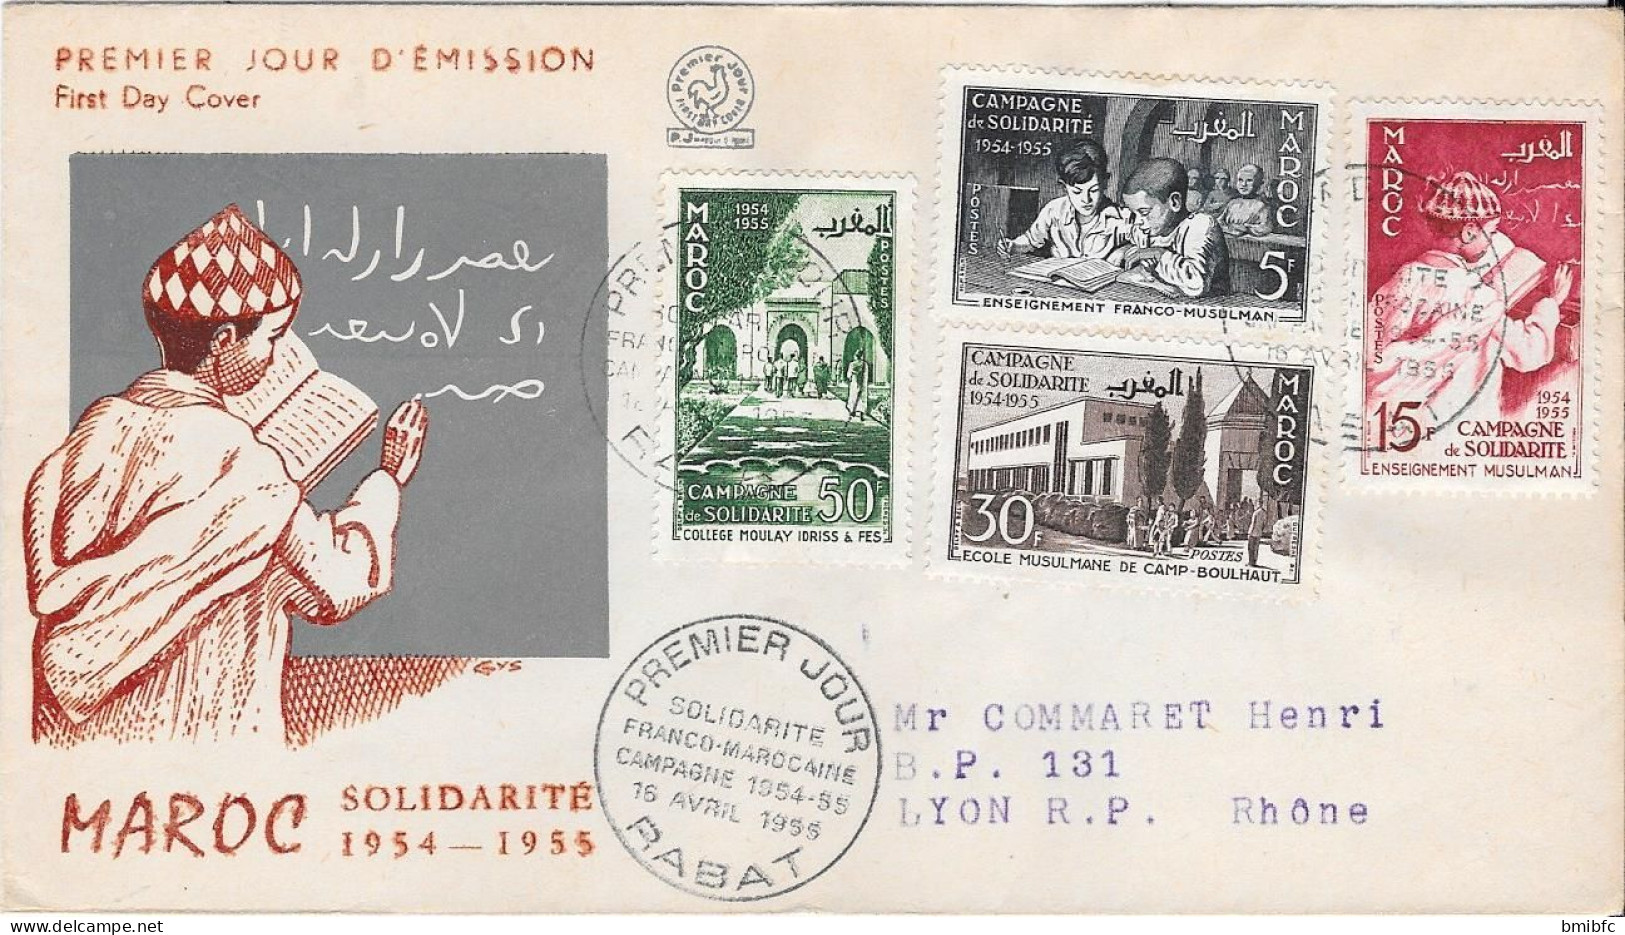 MAROC SOLIDARITÉ 1954-1955 - Maroc (1956-...)